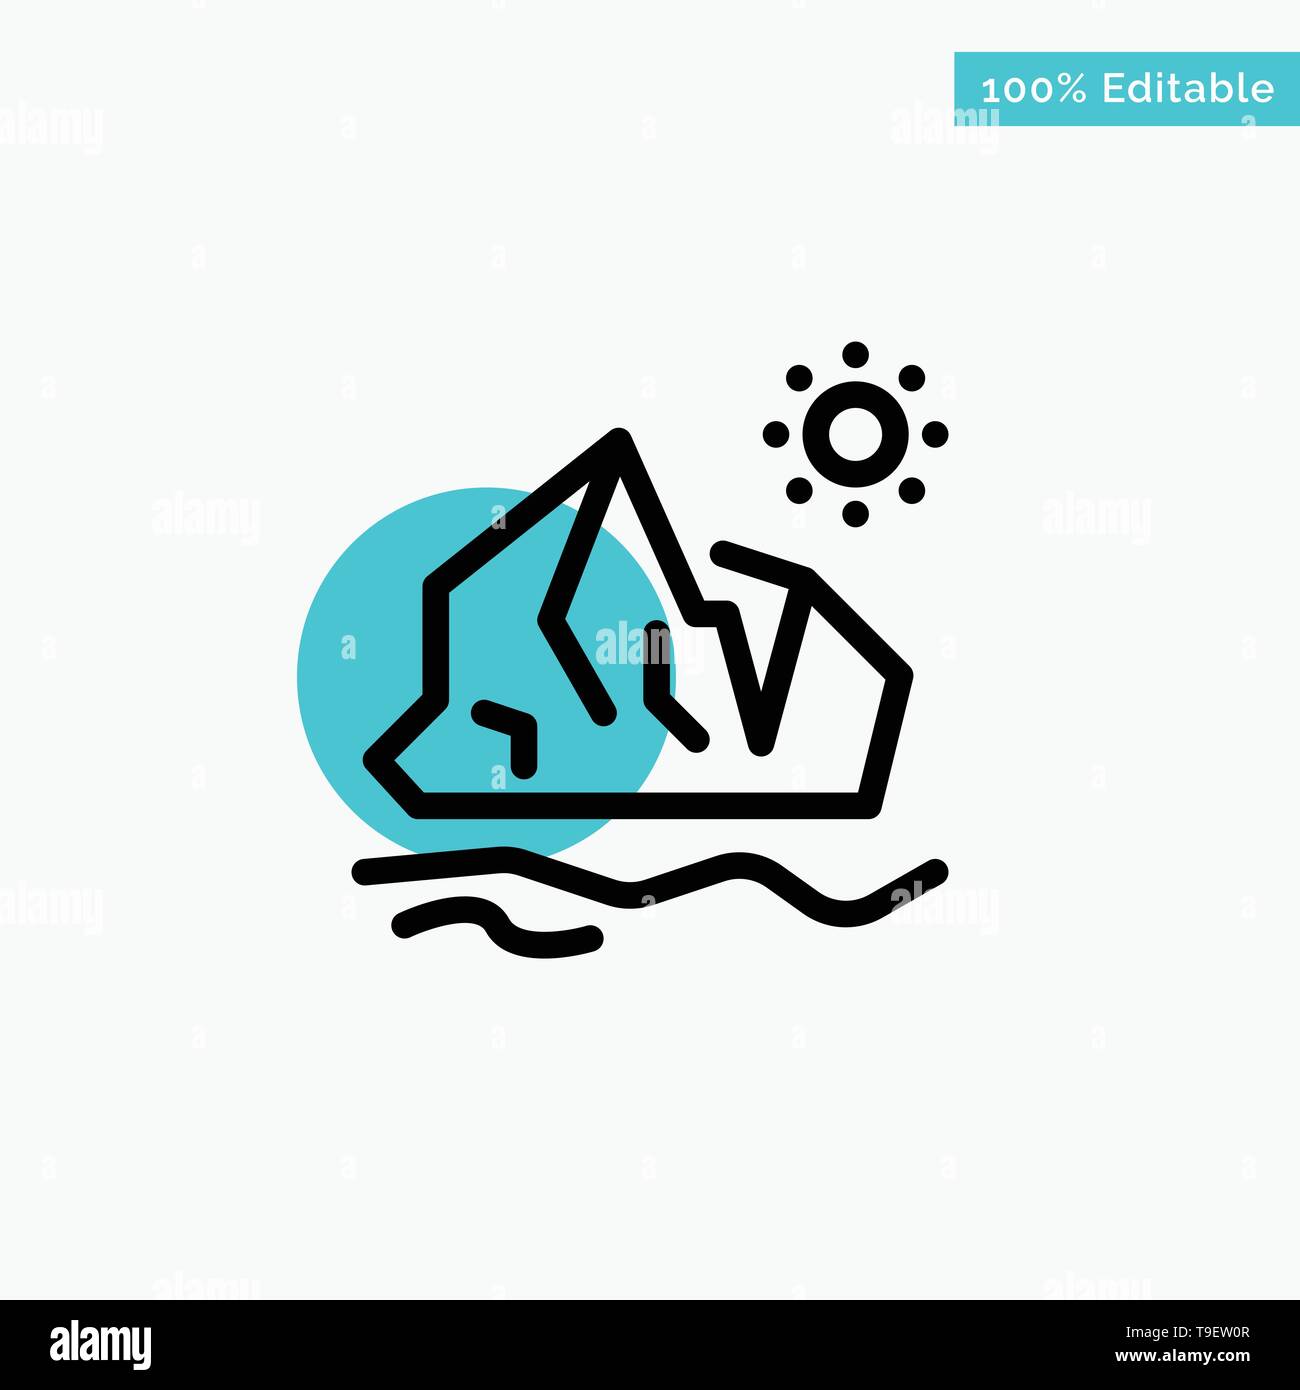 L'écologie, l'environnement, la fonte des glaces, Iceberg, cercle turquoise mettez en surbrillance l'icône vecteur point Illustration de Vecteur